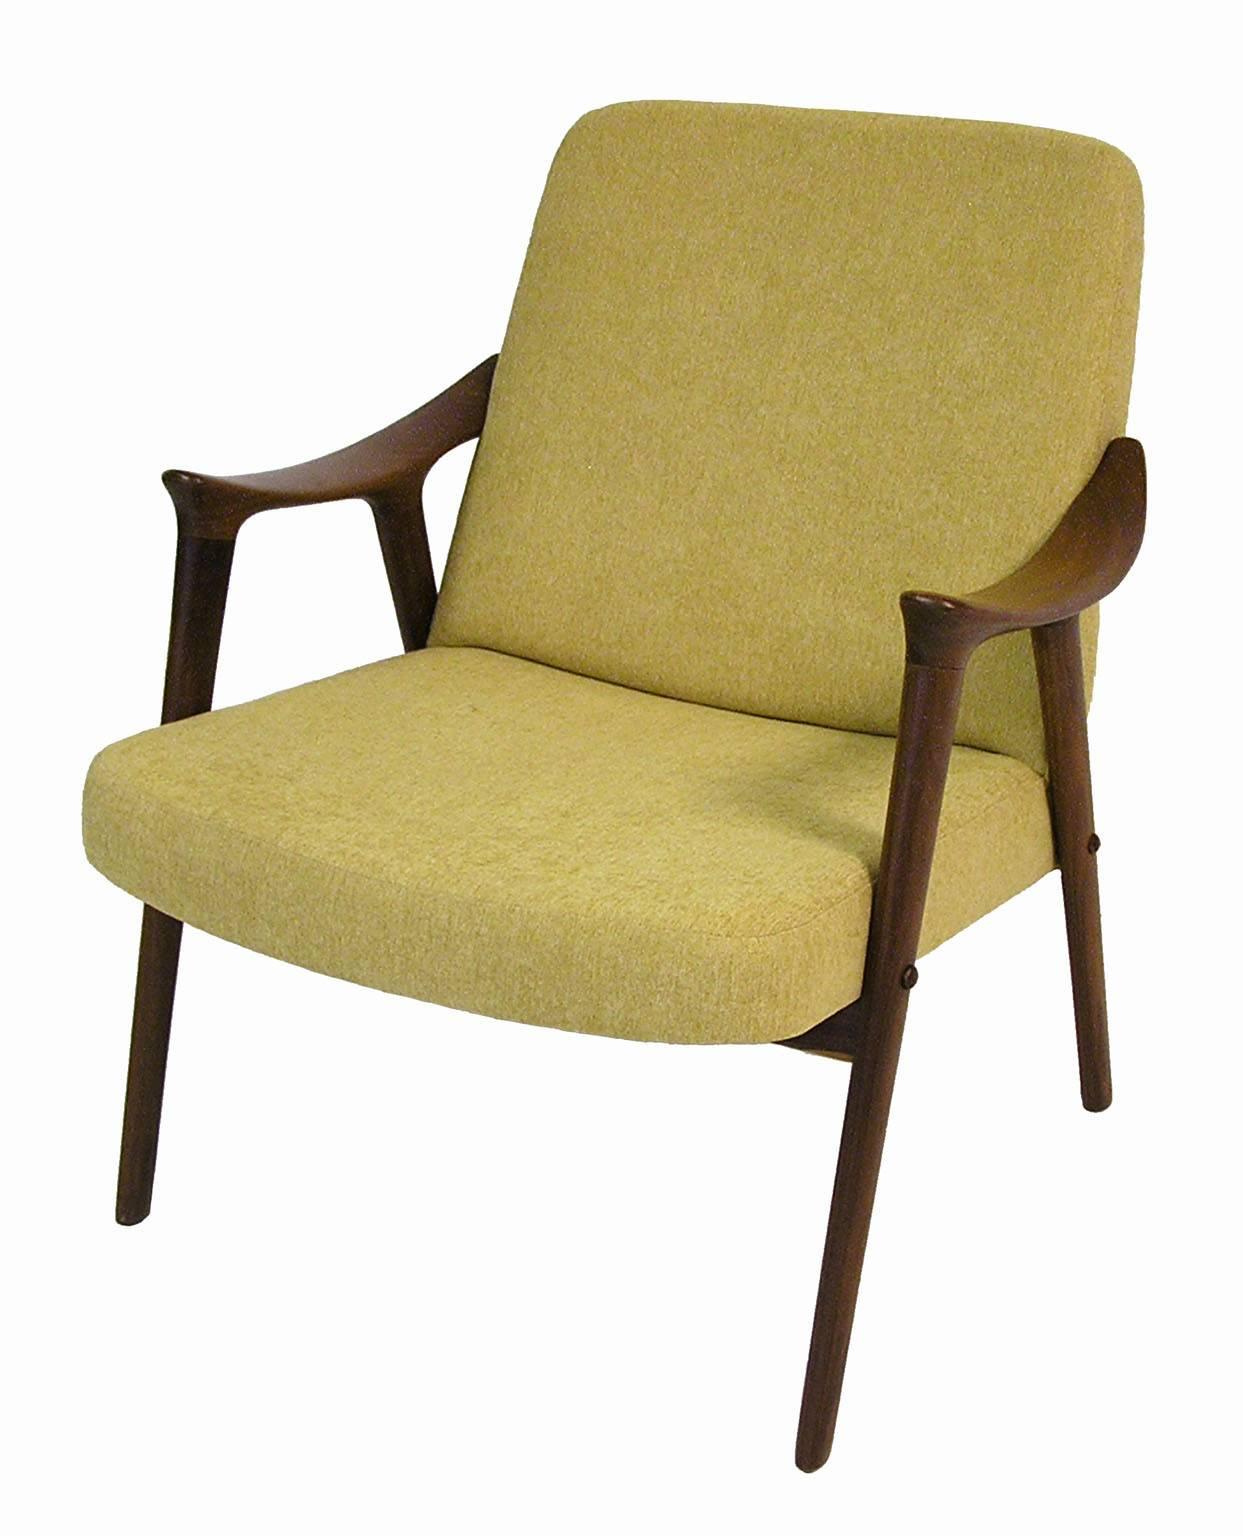 Scandinavian Modern 1960s Teak Easy Chair by Ingmar Relling for Westnofa, Norway 